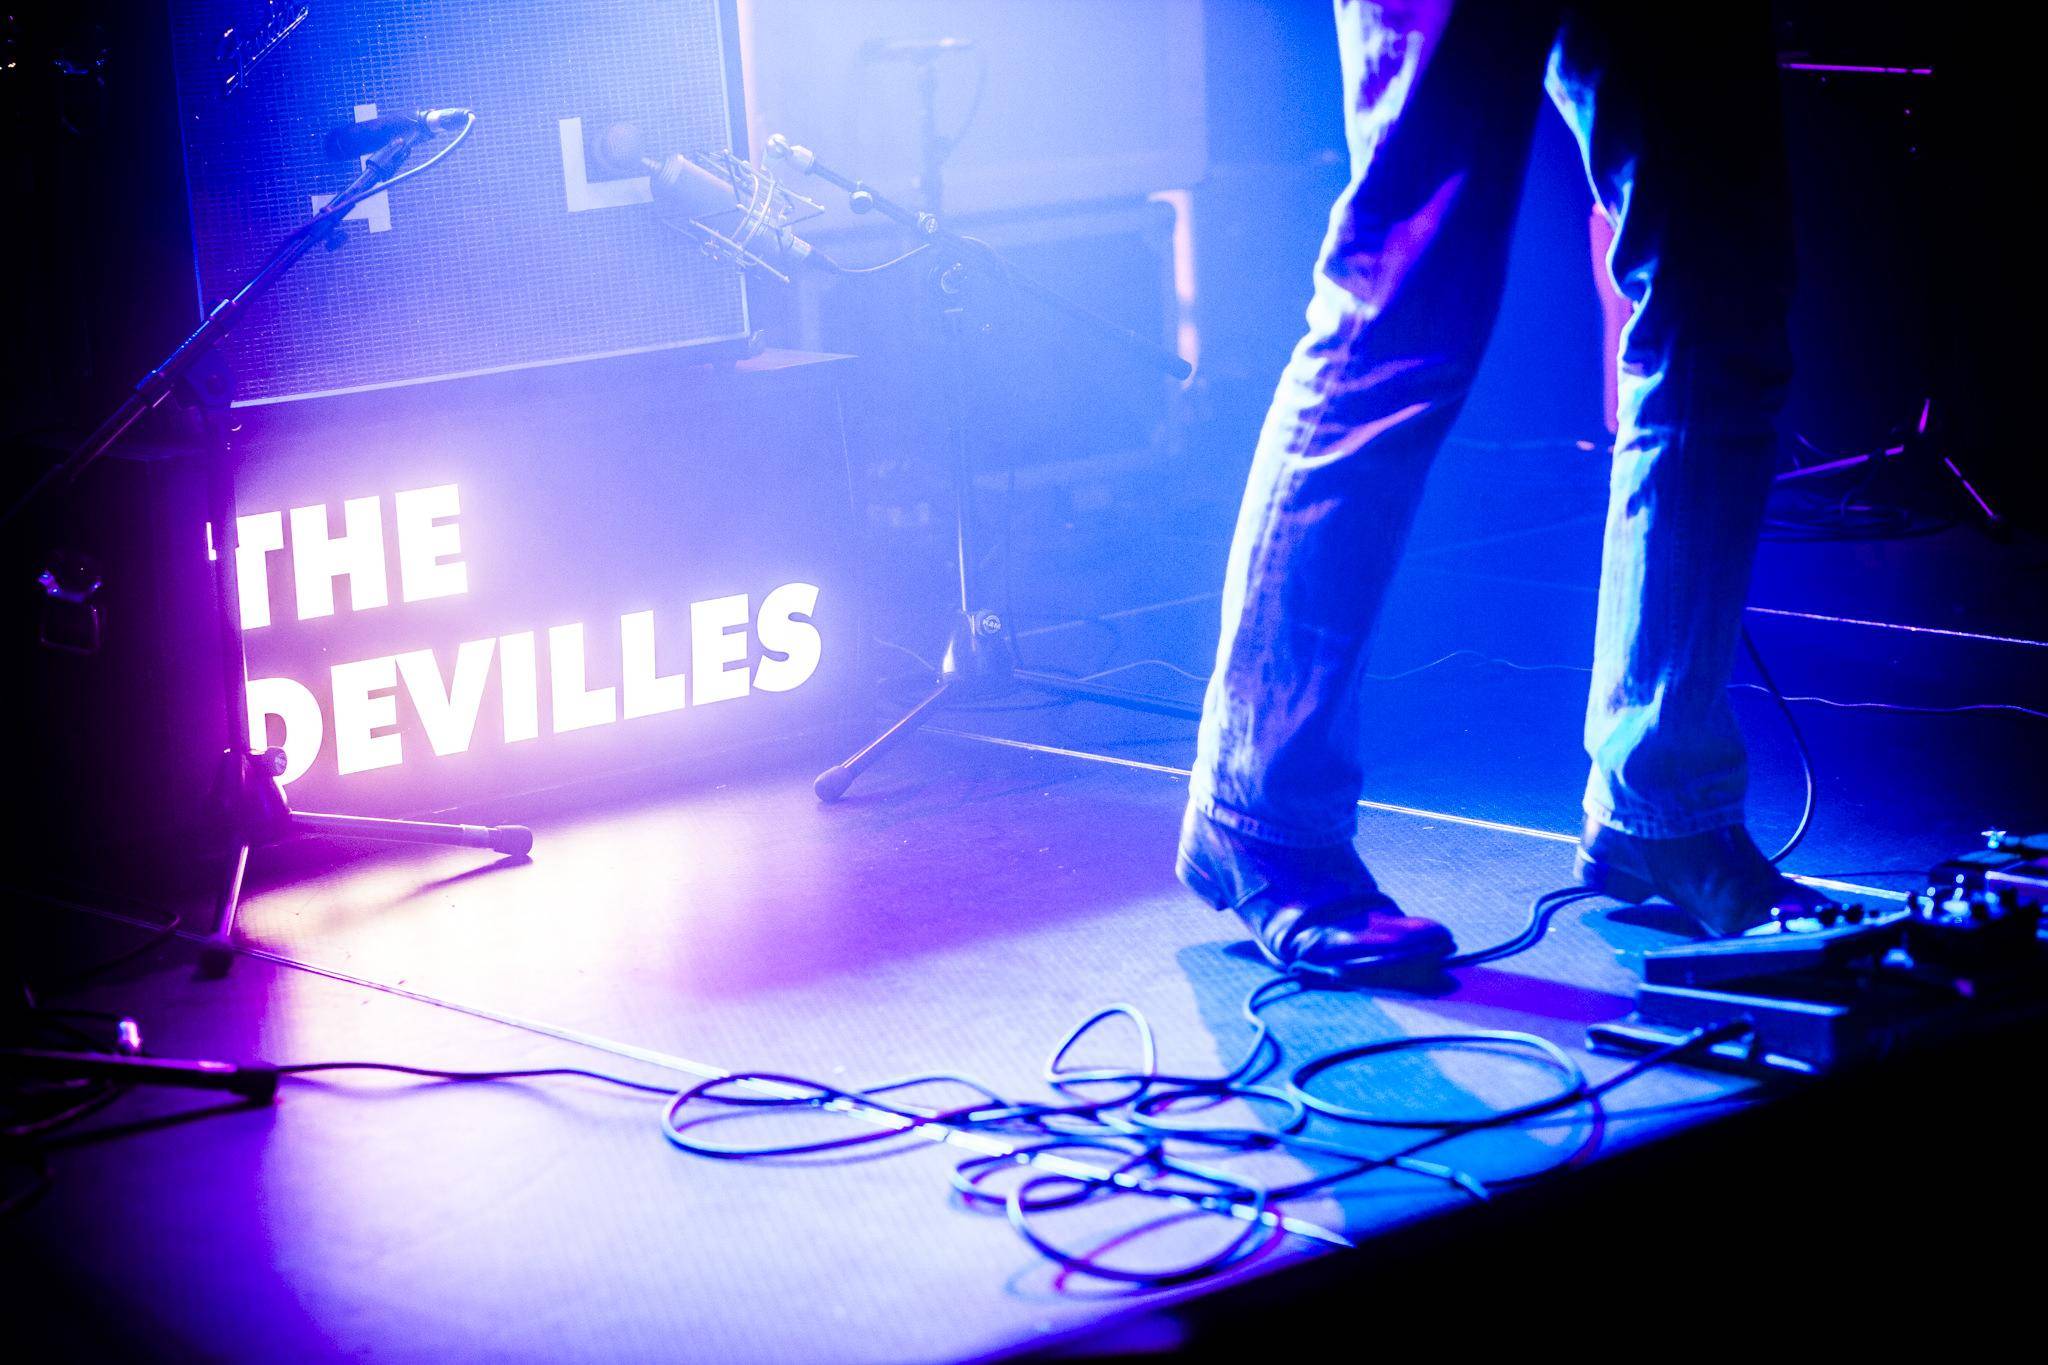 The Devilles